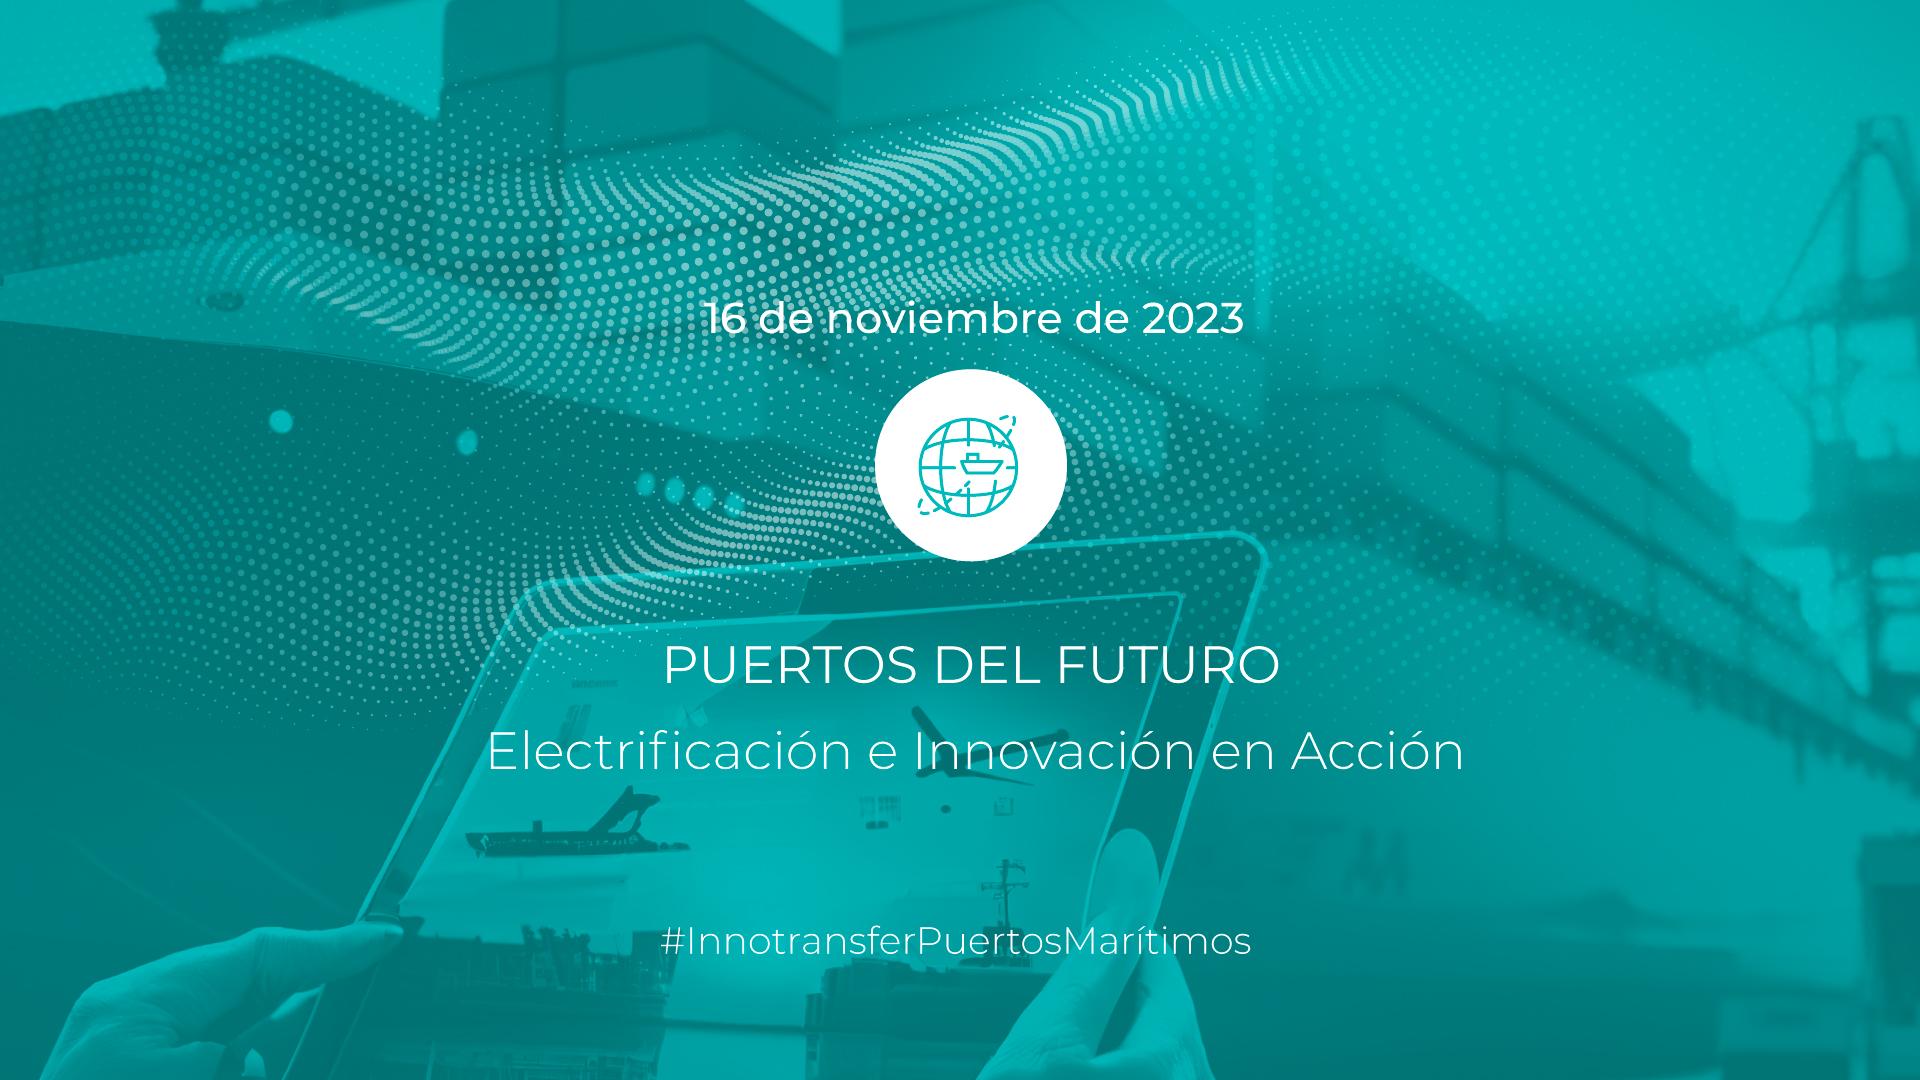 Innotransfer | Puertos del futuro: Electrificación e innovación en acción